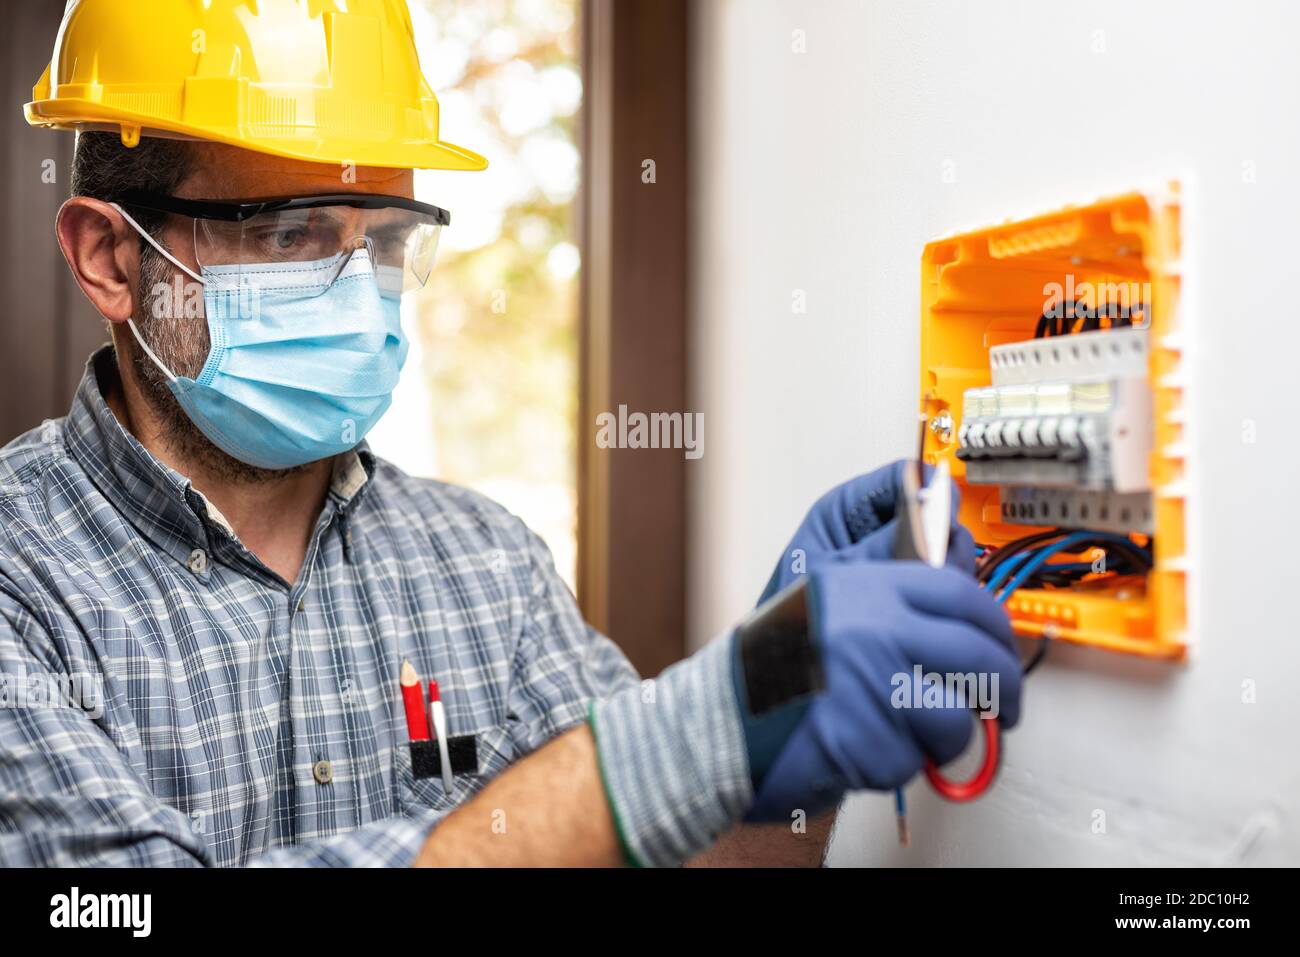 Elektriker bei der Arbeit an einem elektrischen Panel mit Helm, Schutzbrille und Handschuhe geschützt; tragen Sie die chirurgische Maske, um die Ausbreitung von Coronavirus zu verhindern Stockfoto